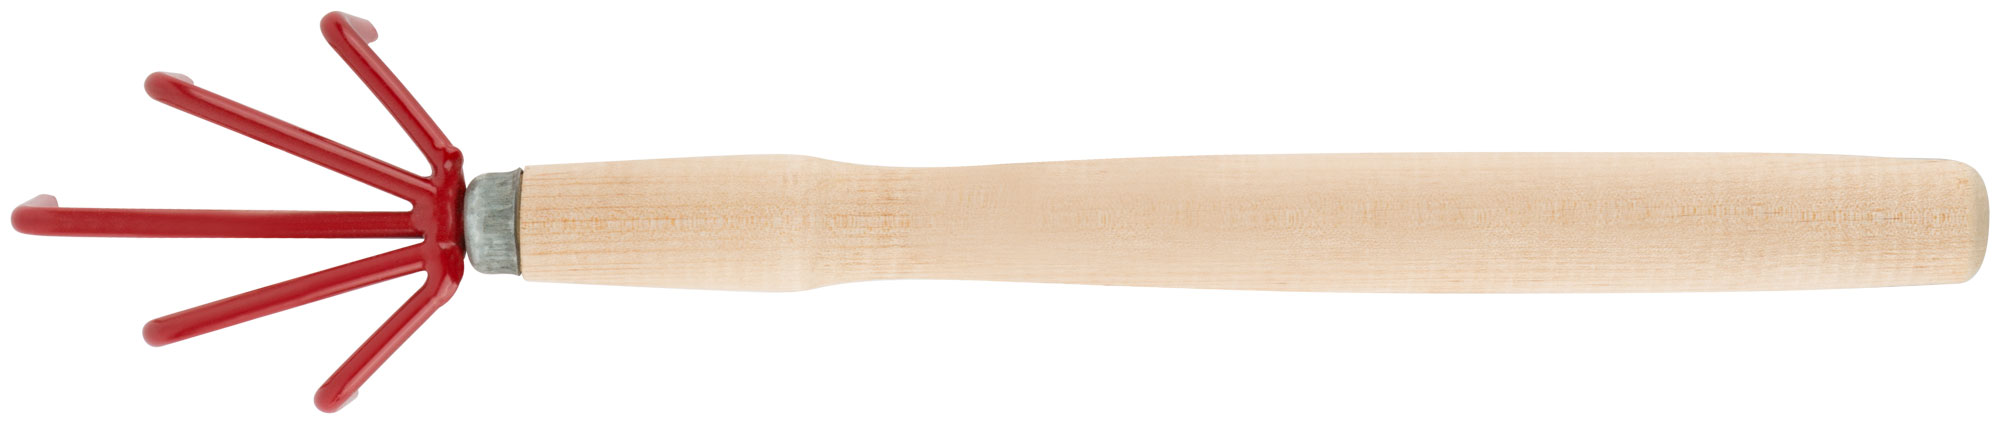 Рыхлитель с деревянной ручкой 5 зубьев